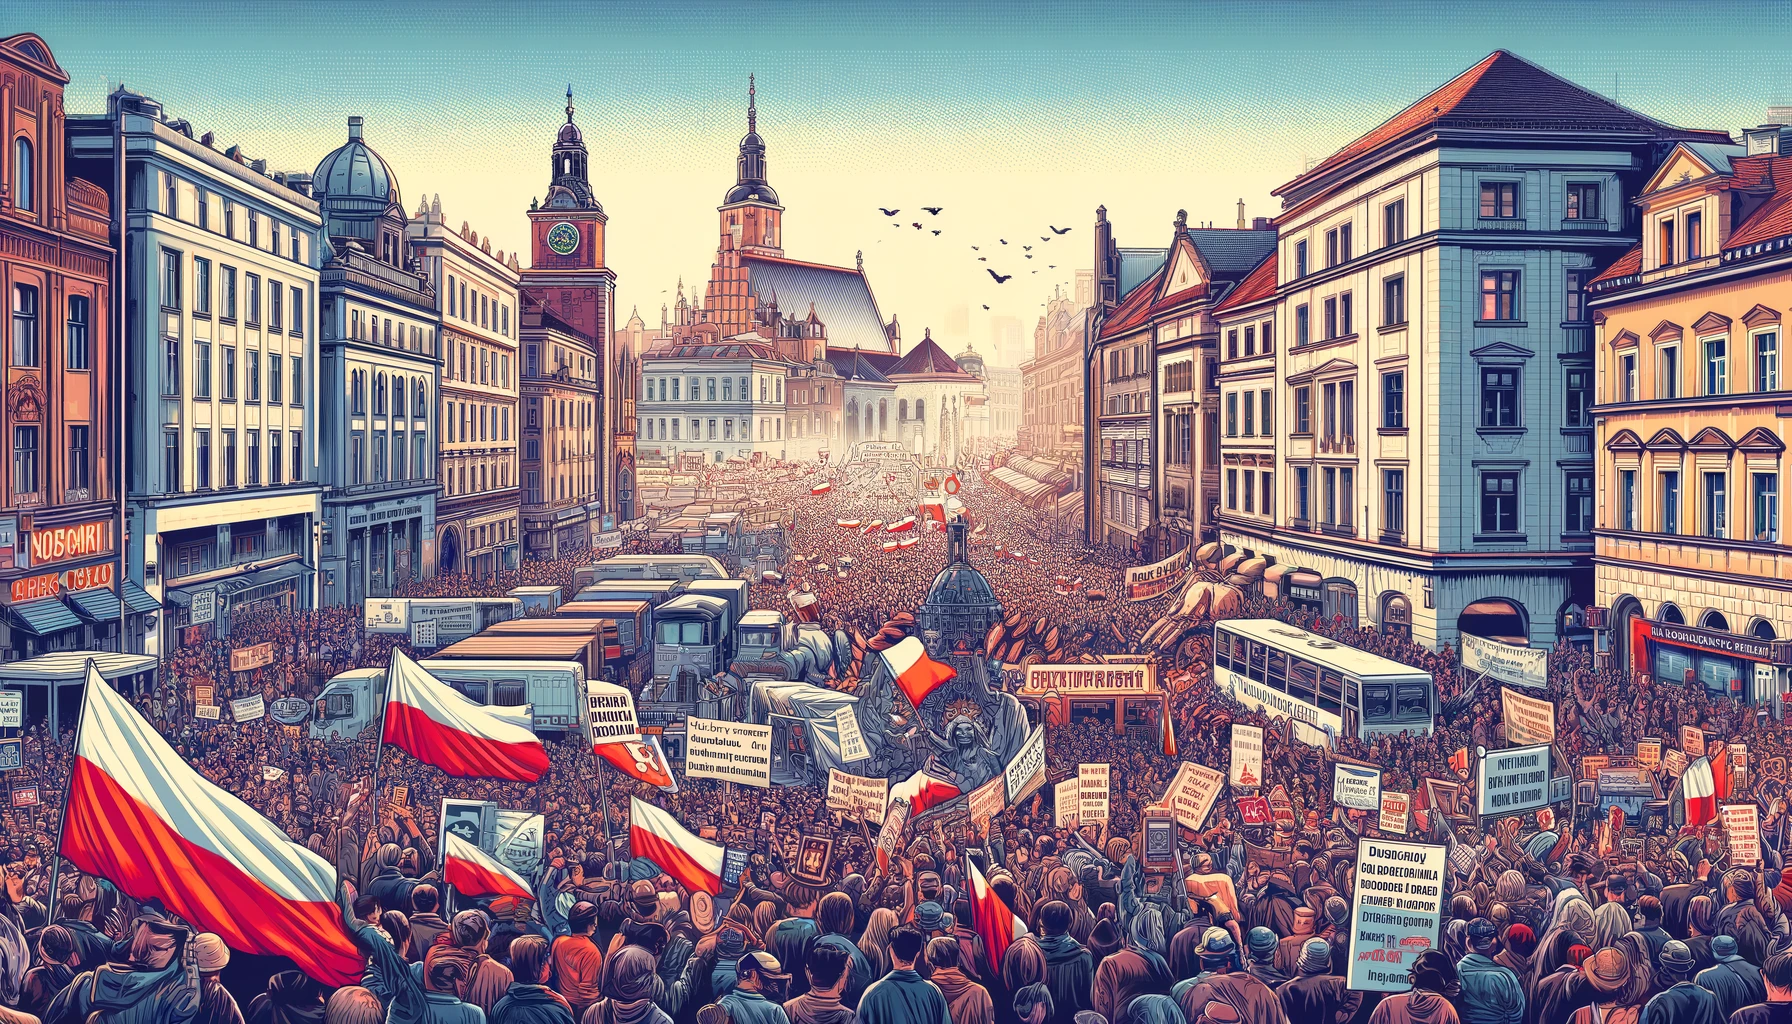 Zmiany w Nastrojach Społecznych w Polsce: Rosnące Obawy i Niechęć do „Integracji Europejskiej”